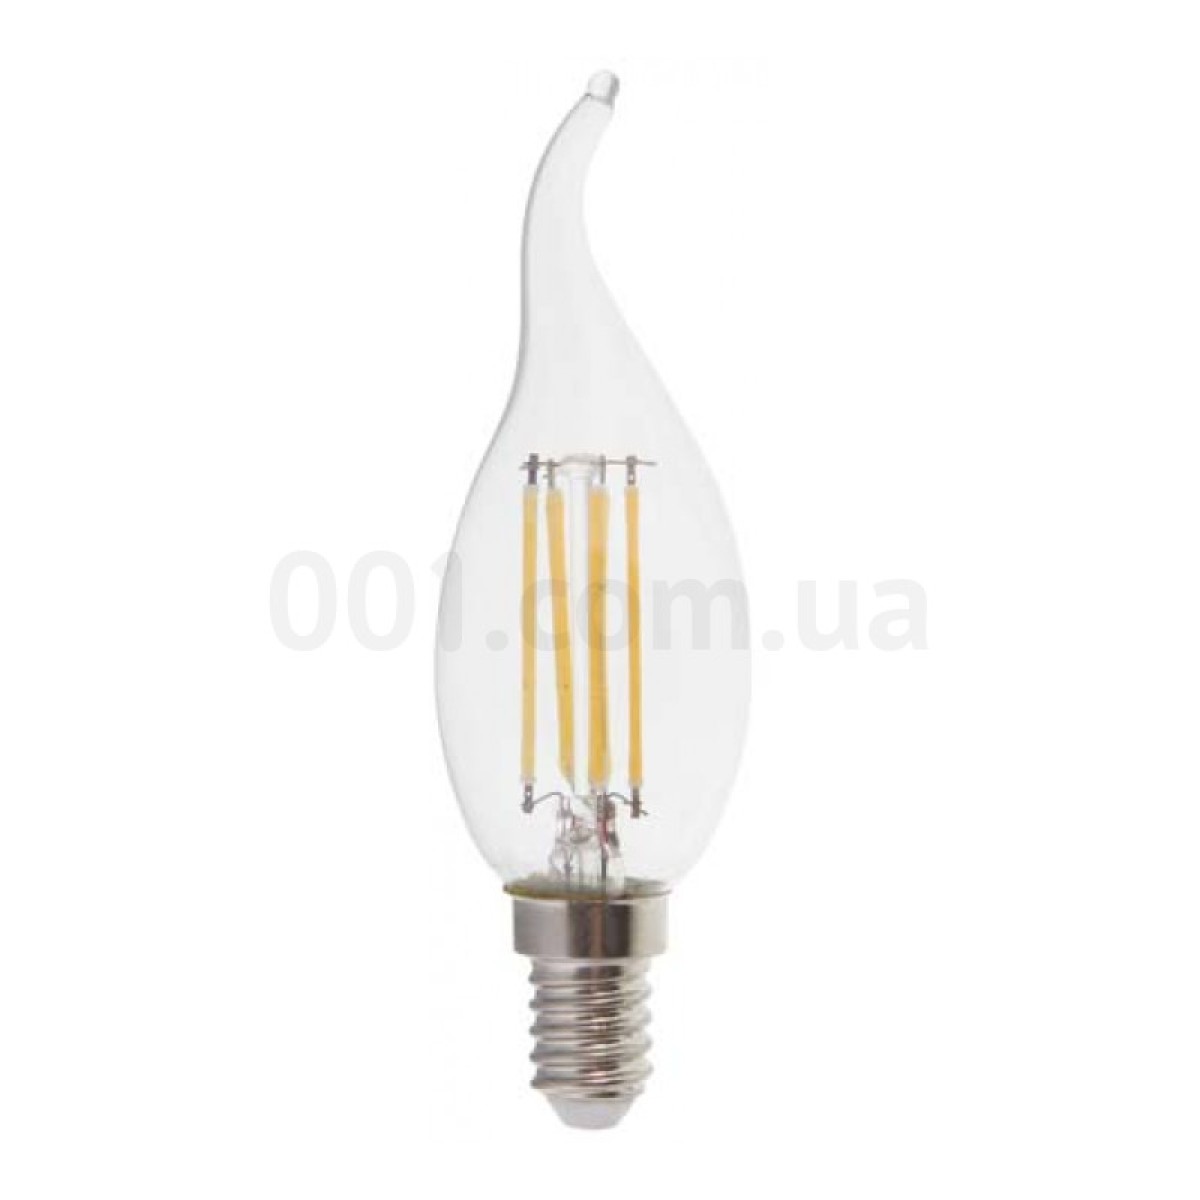 Світлодіодна лампа LB-159 CF37 (свічка на вітрі) філамент 6Вт 2700K E14, Feron 256_256.jpg